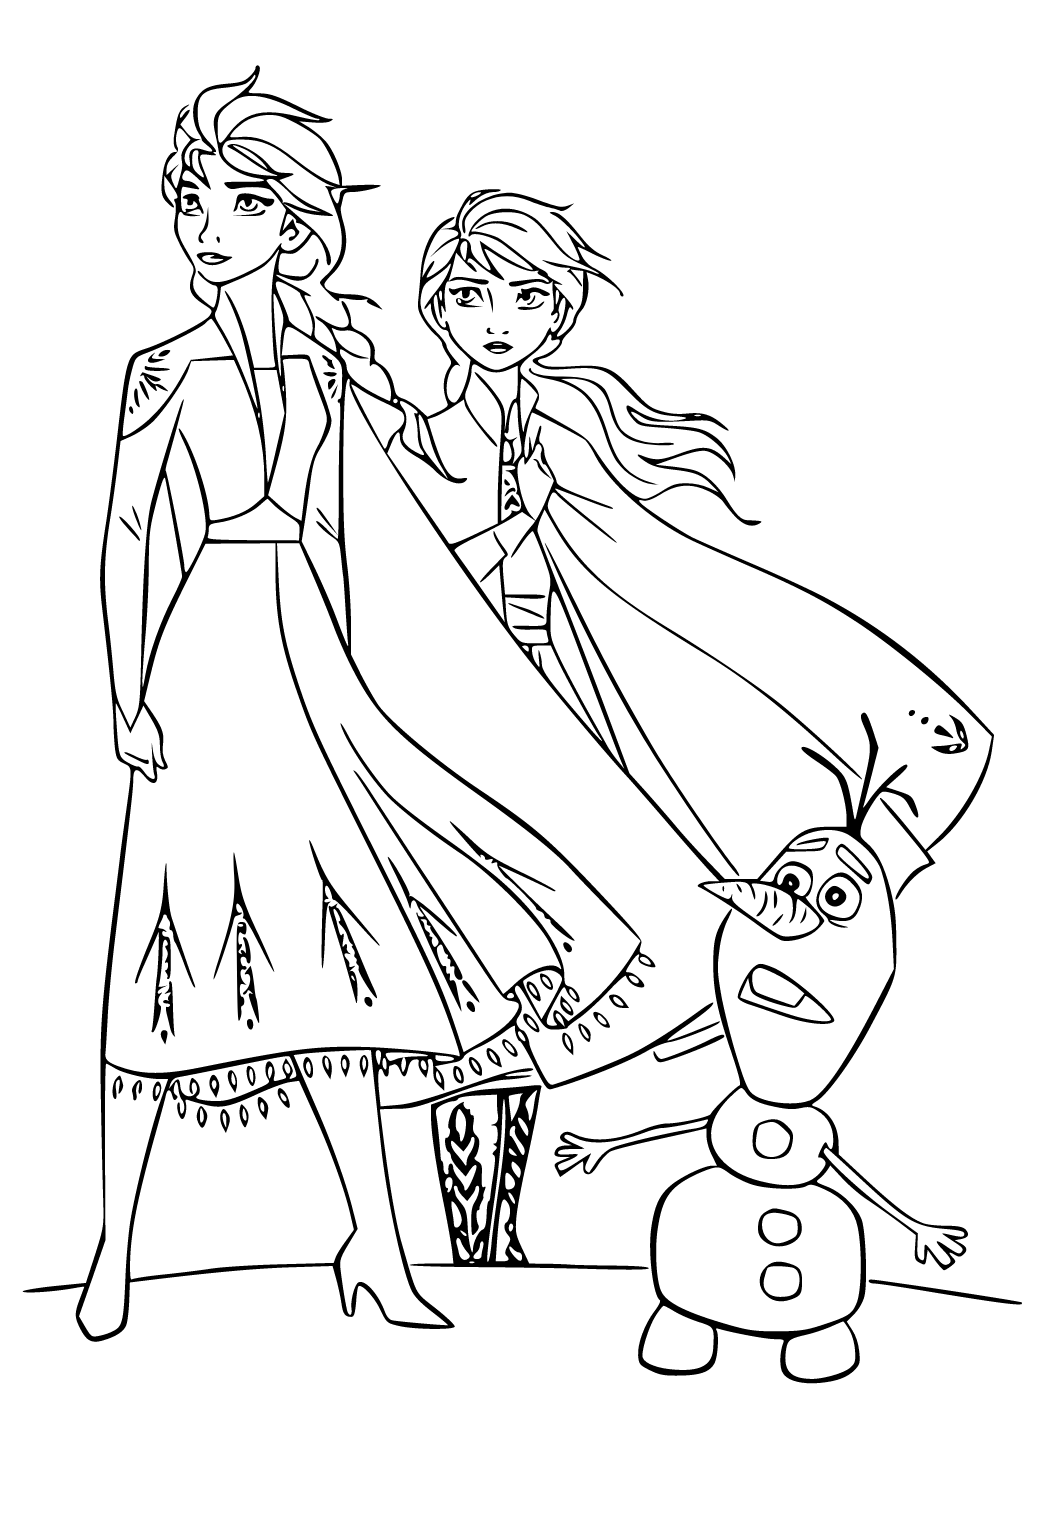 Anna und Elsa